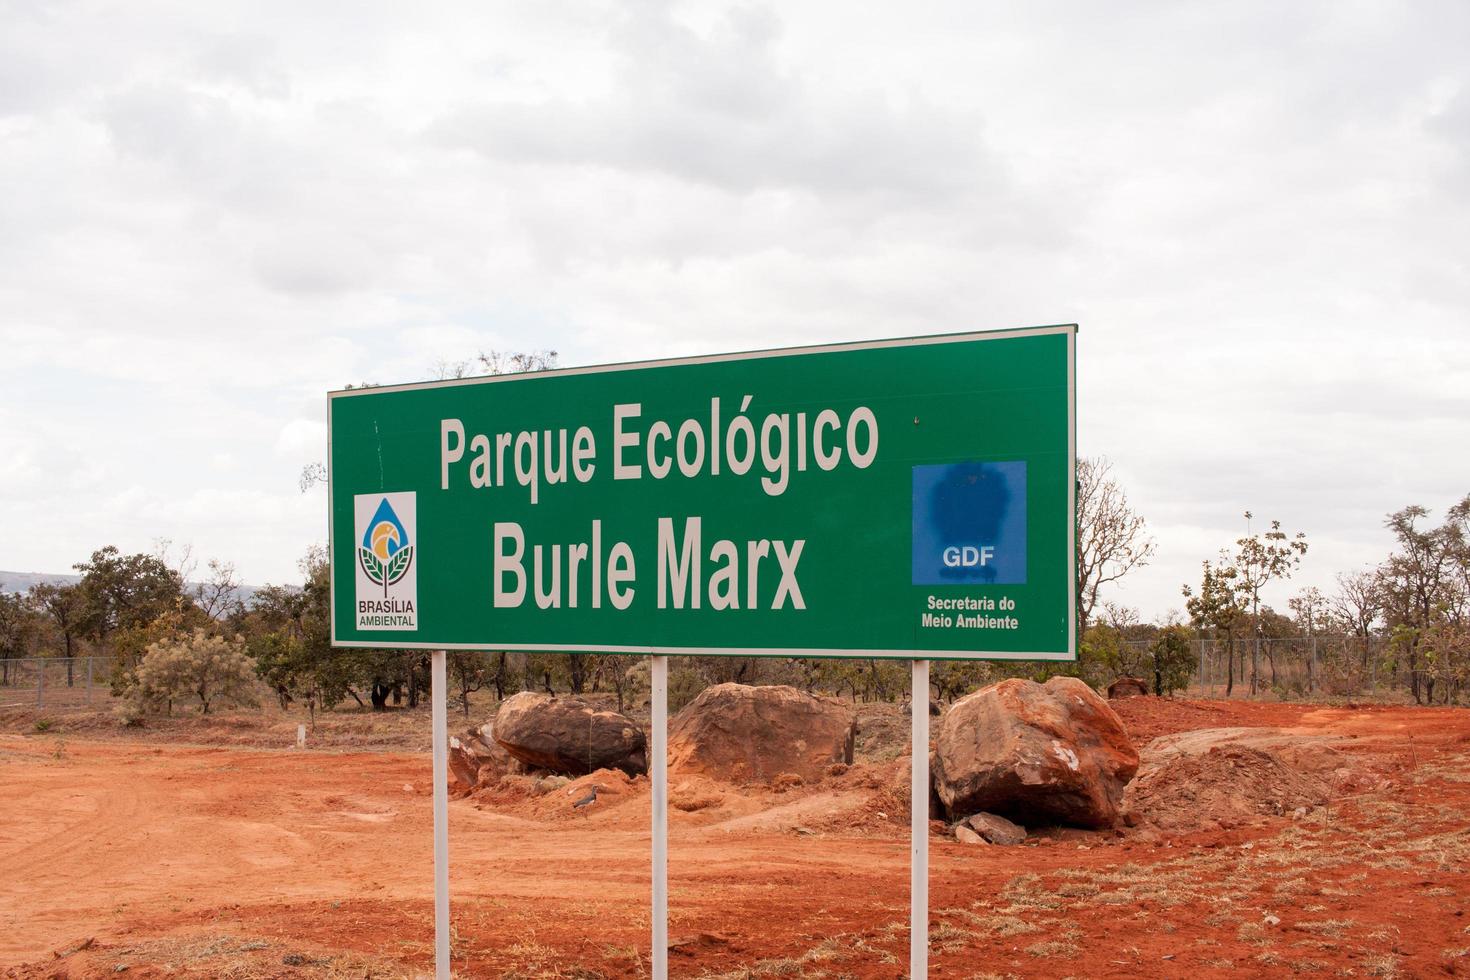 brasilien, brasilien 10 augusti 2022 en av ingångarna till naturparken burle marx i nordvästra delen av brasilien, känd som noroeste foto